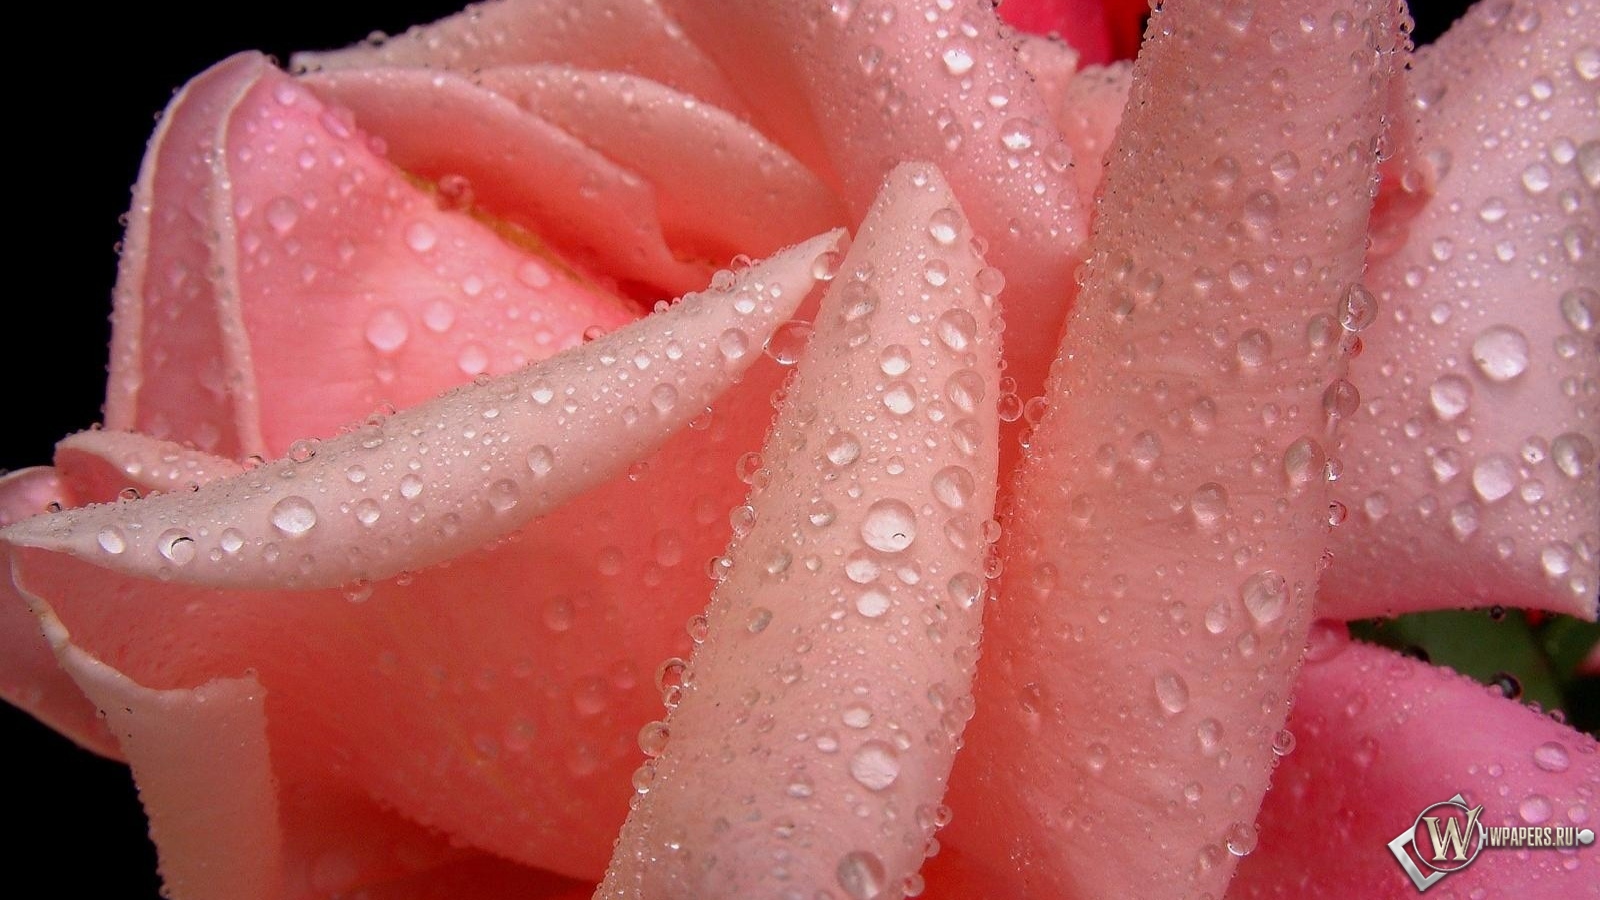 Розовая роза 1600x900